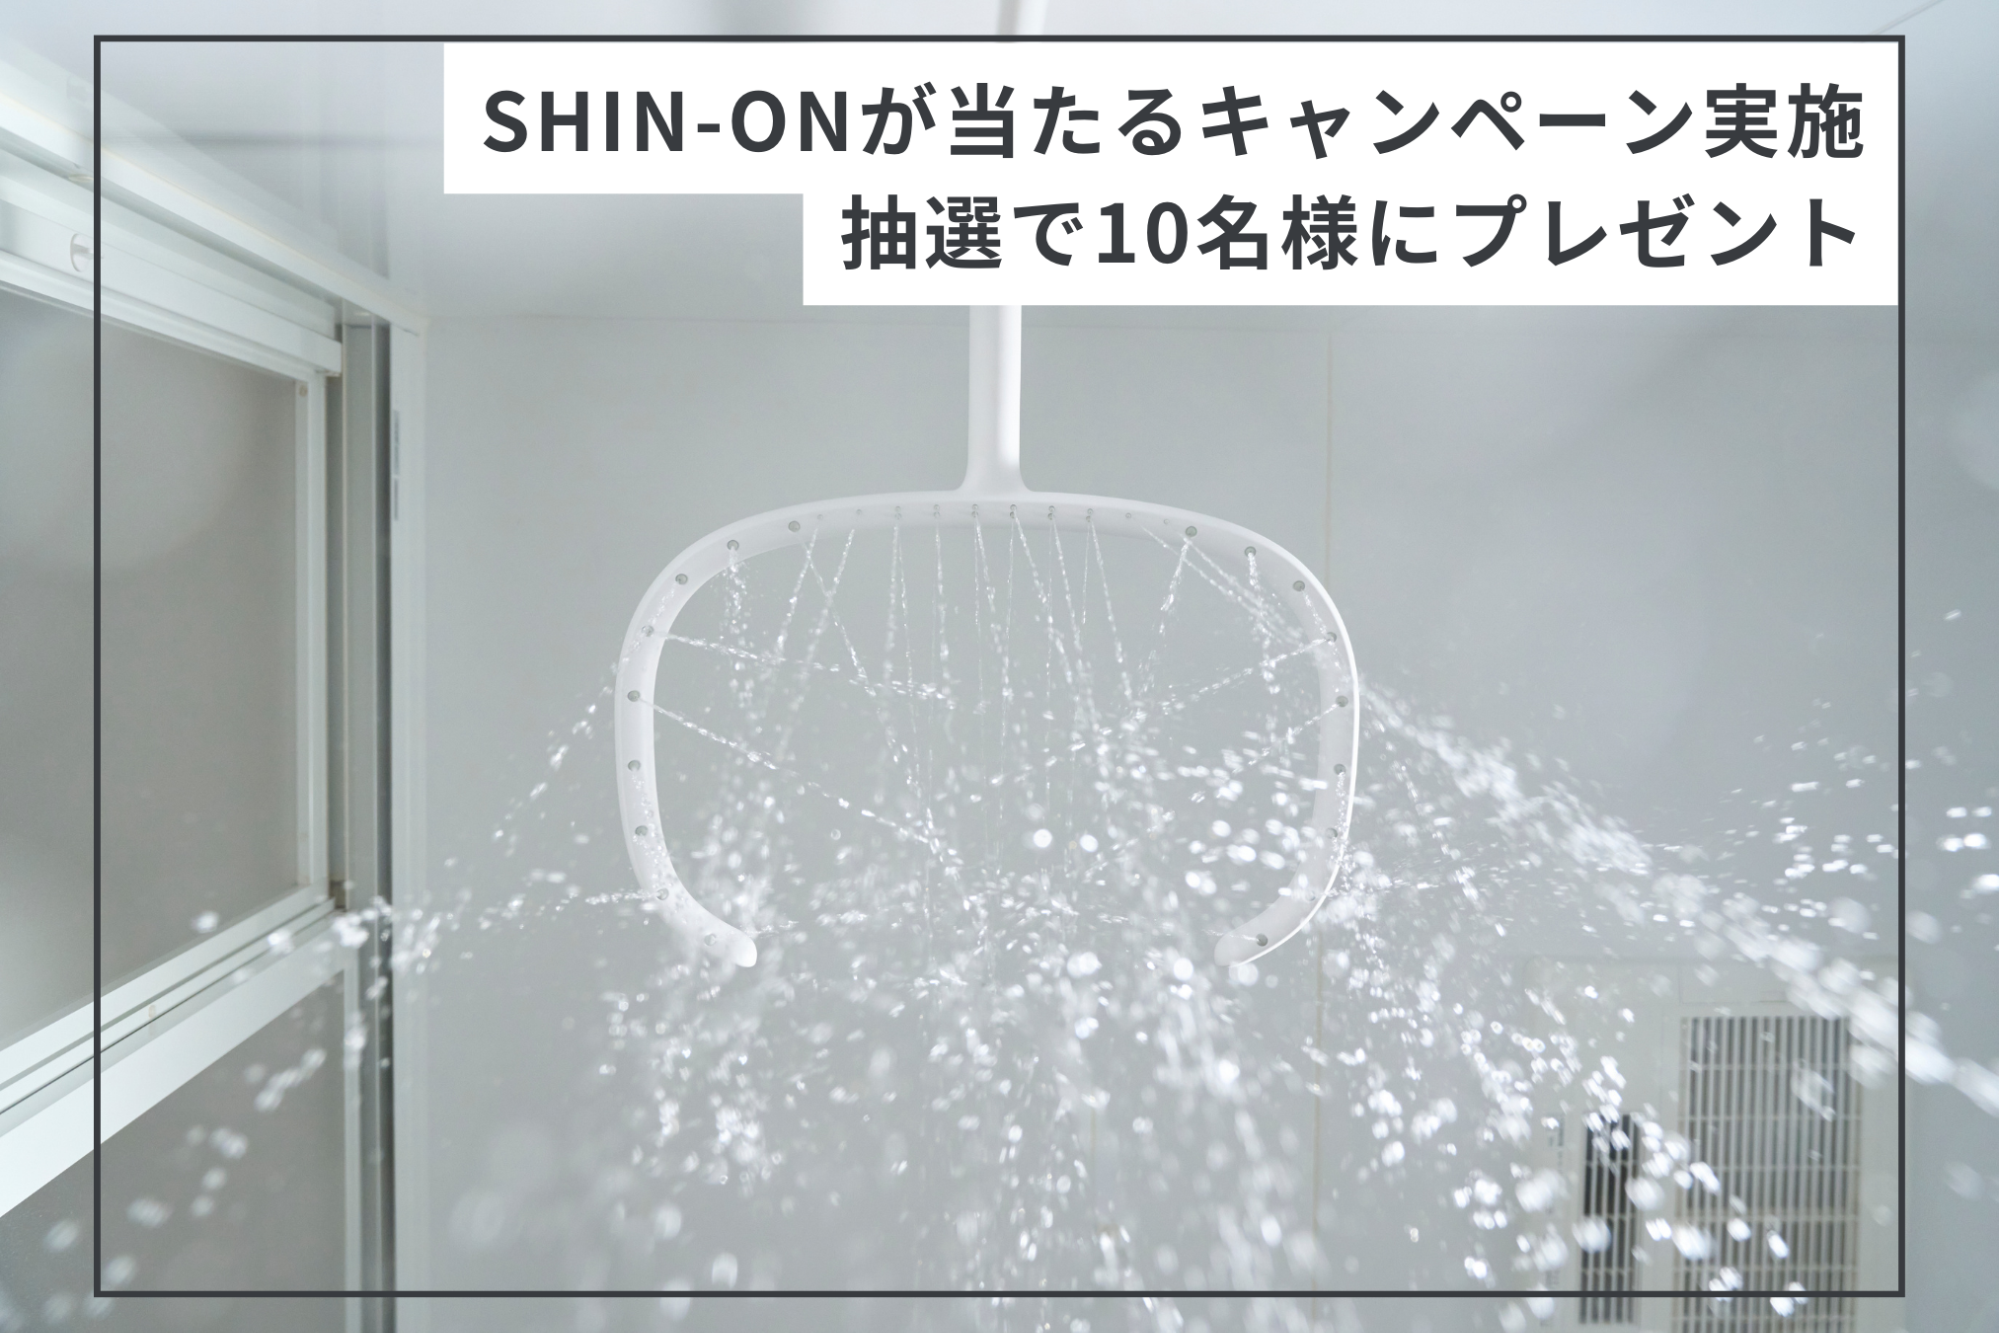 寒くなるこれからの時期に。 お湯に包まれてポカポカ持続のシャワーヘッド「SHIN-ON」の プレゼントキャンペーンを実施 サムネイル画像